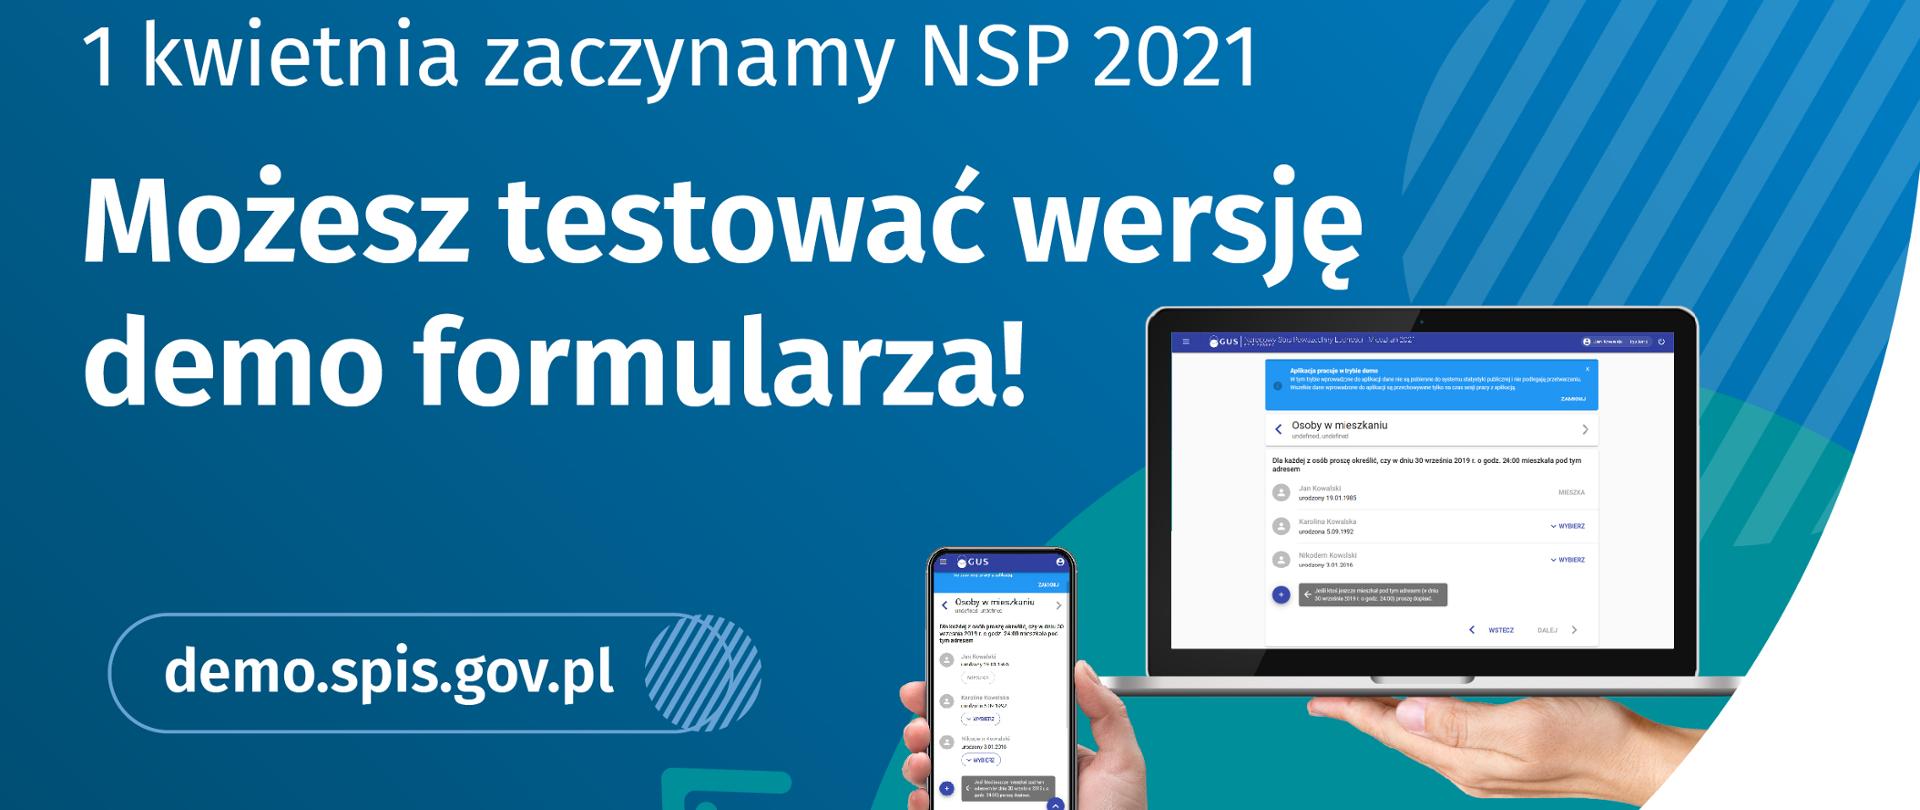 Baner promujący NSP 2021 - 1 kwietnia zaczynamy NSP 2021.Możesz testować wersję demo formularza!